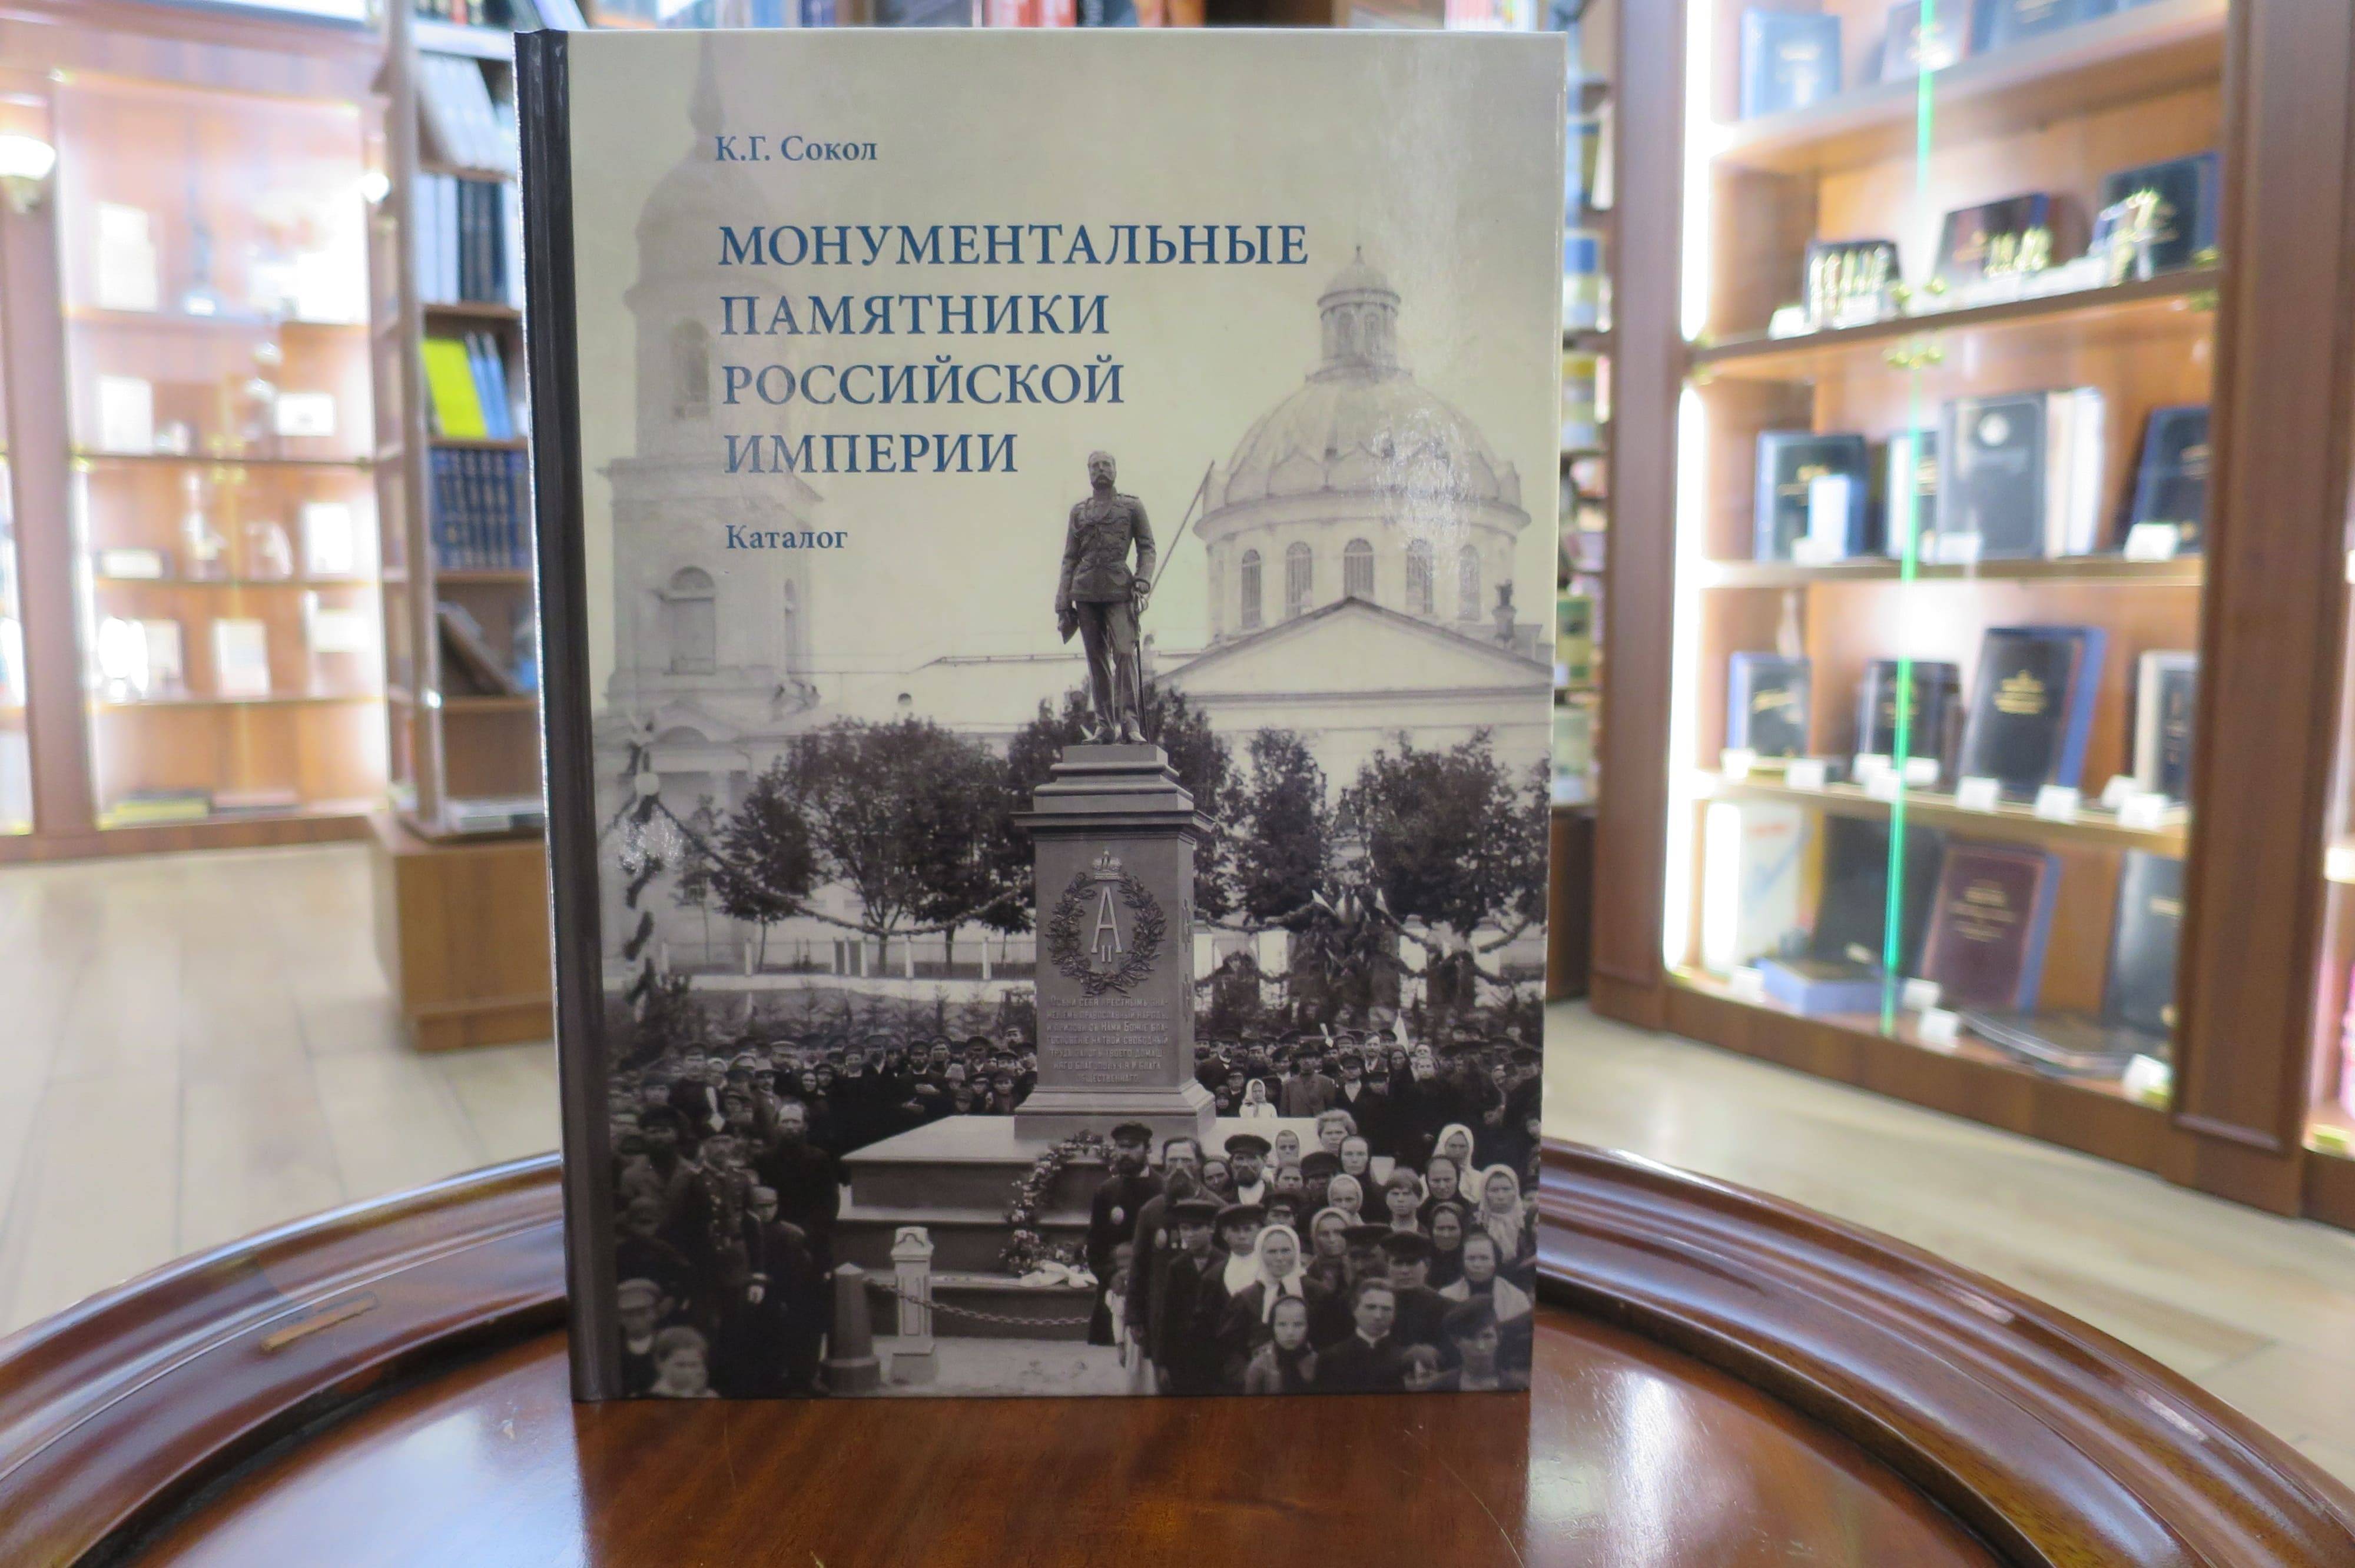 Презентация книги-каталога «Монументальные памятники Российской империи» прошла в Книжном клубе «Достоевский»